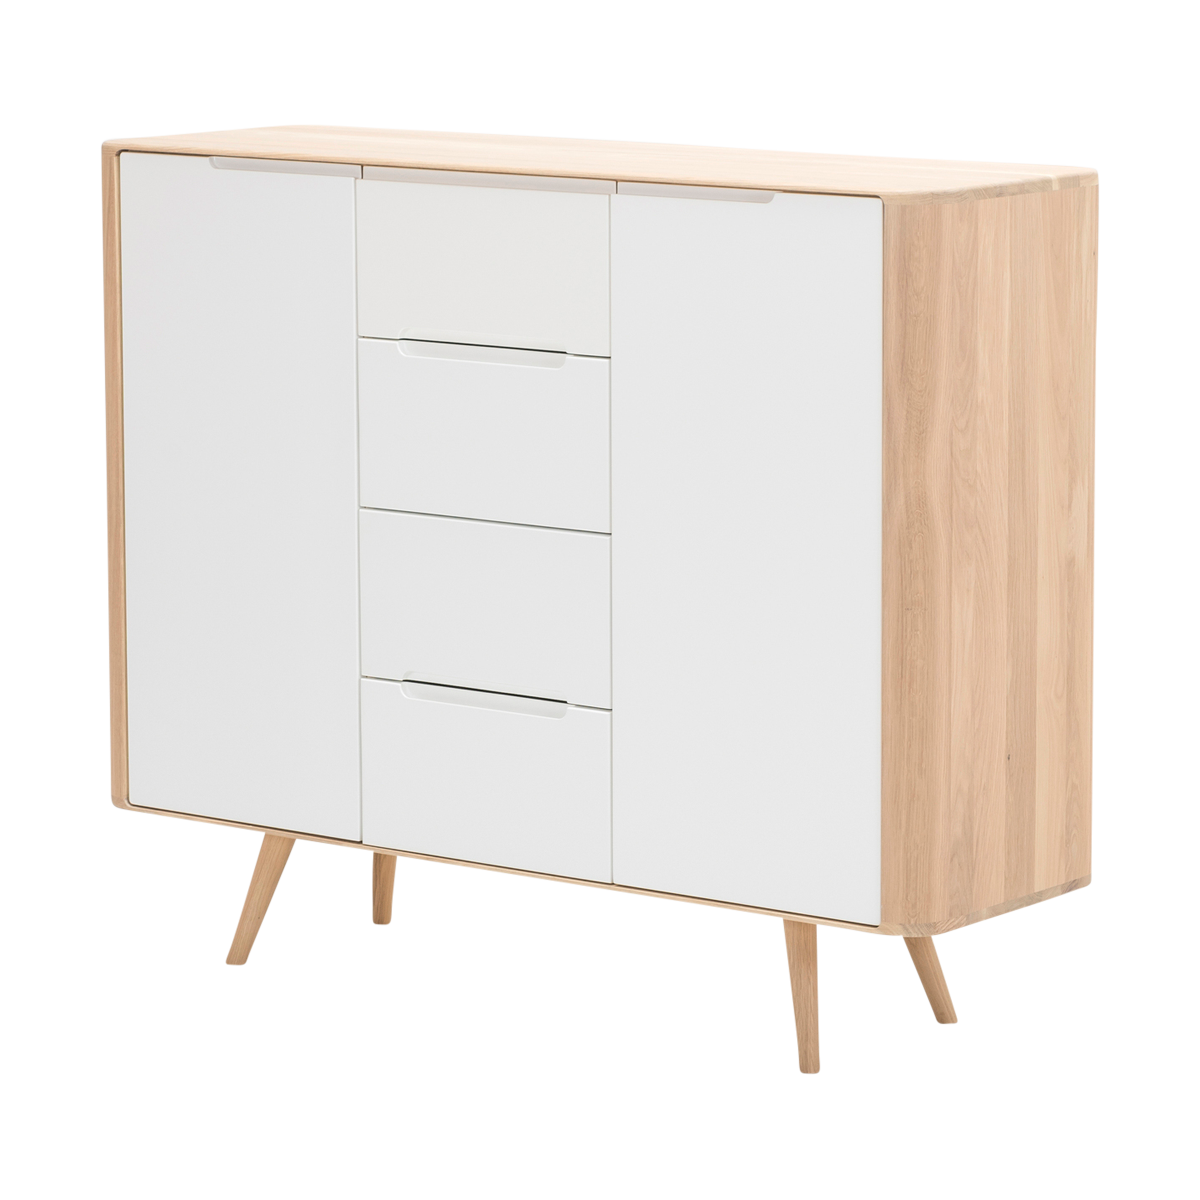 Ena dresser 135 houten ladekast whitewash - 135 x 110 cm